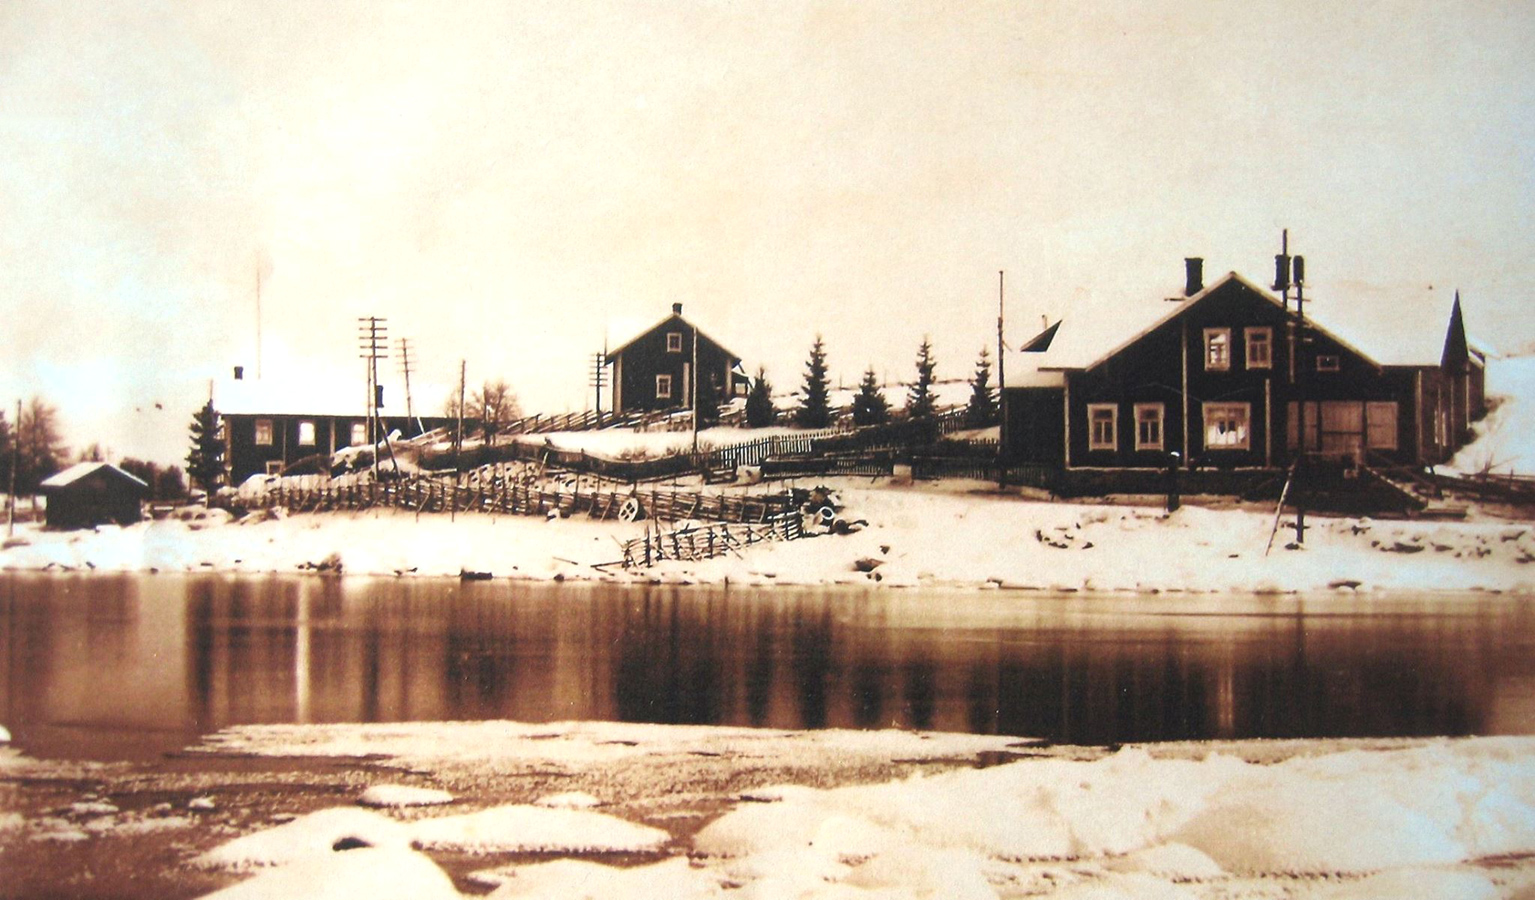 Early 1930's. Jehkilä